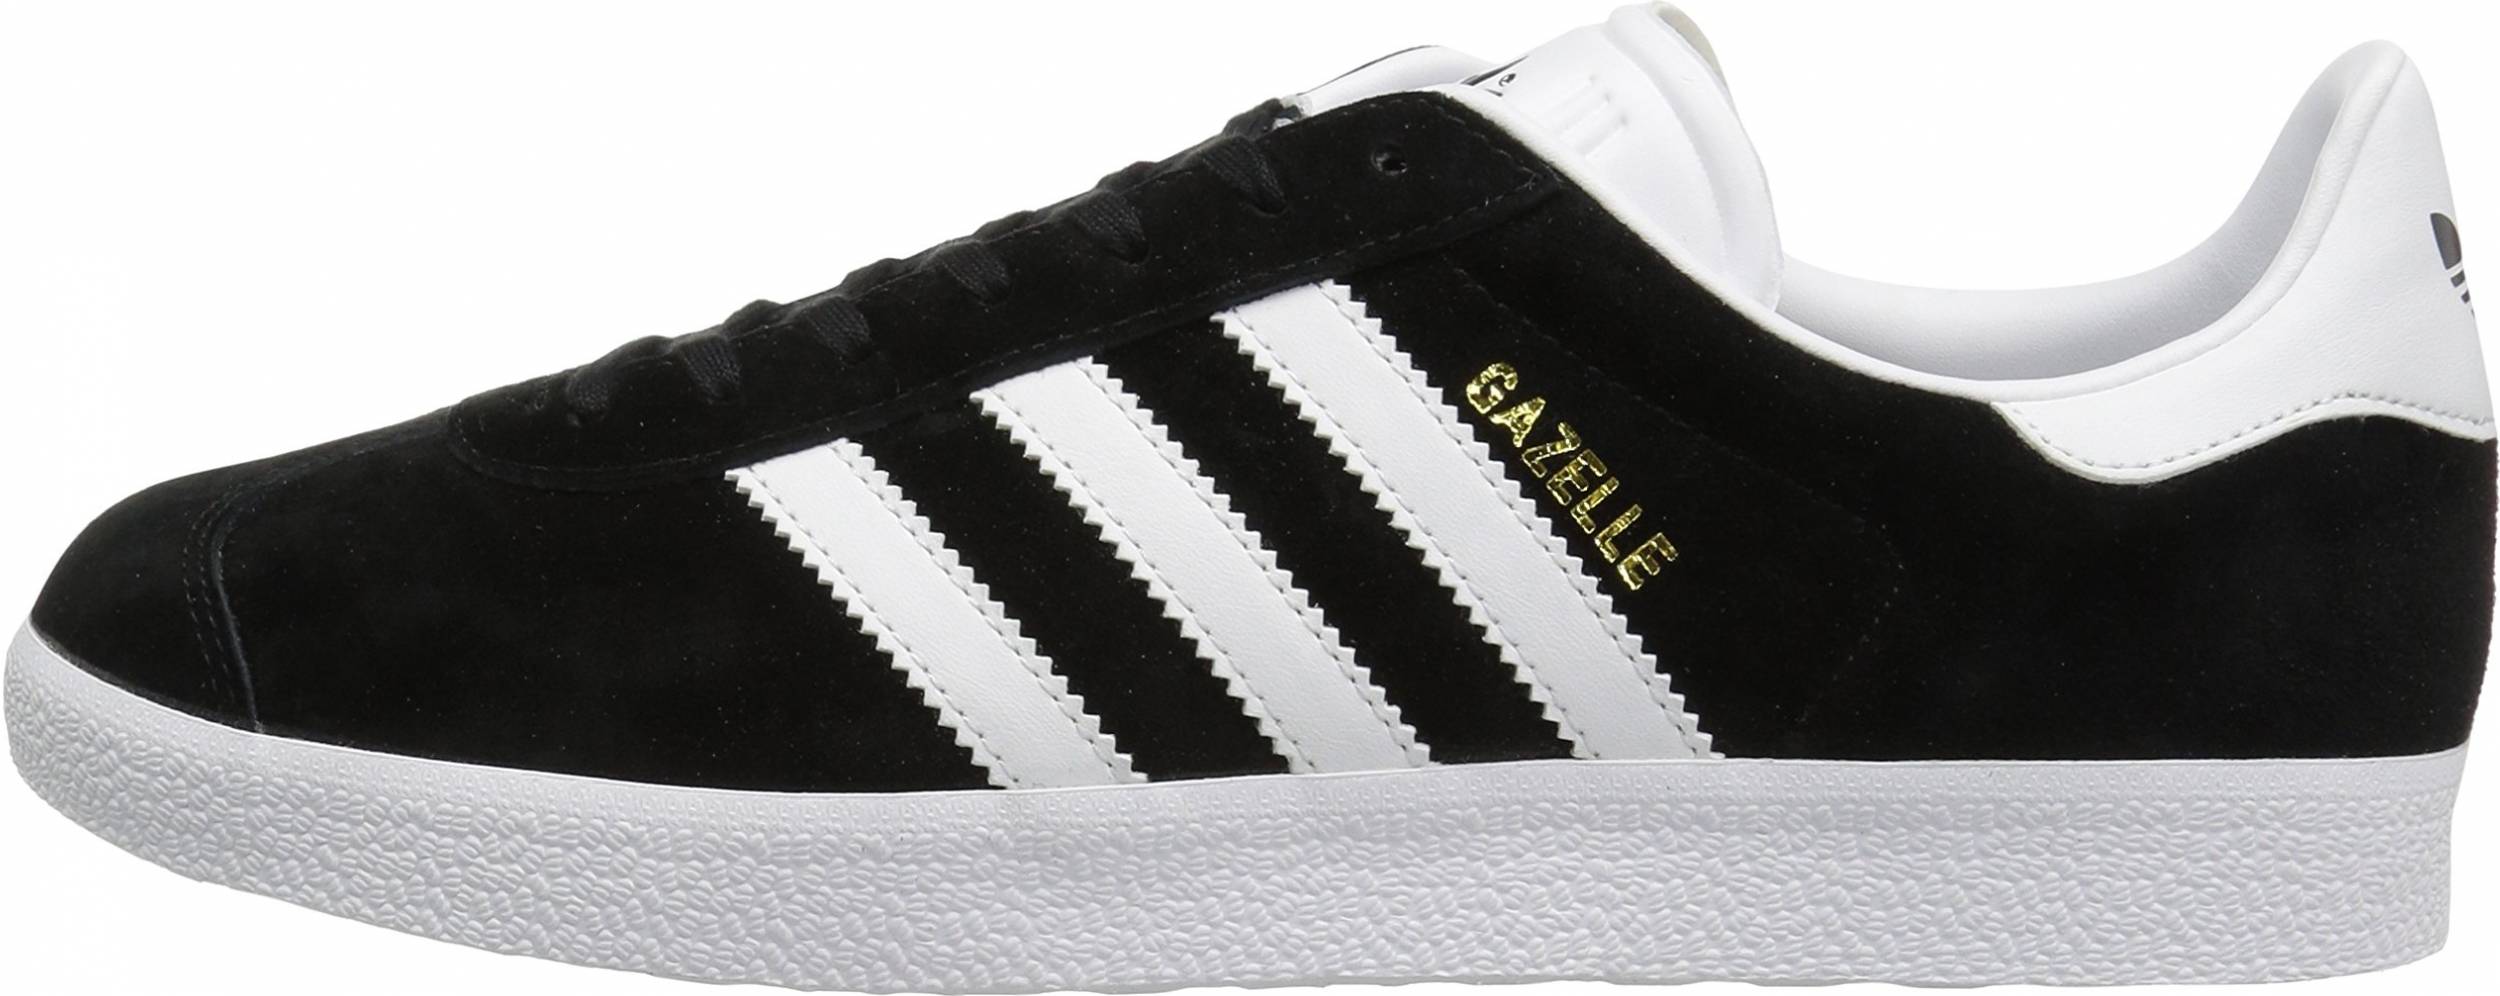 Adidas Gazelle sneakers in 50+ colors (only $39) | RunRepeat بدل رسمية رجالية